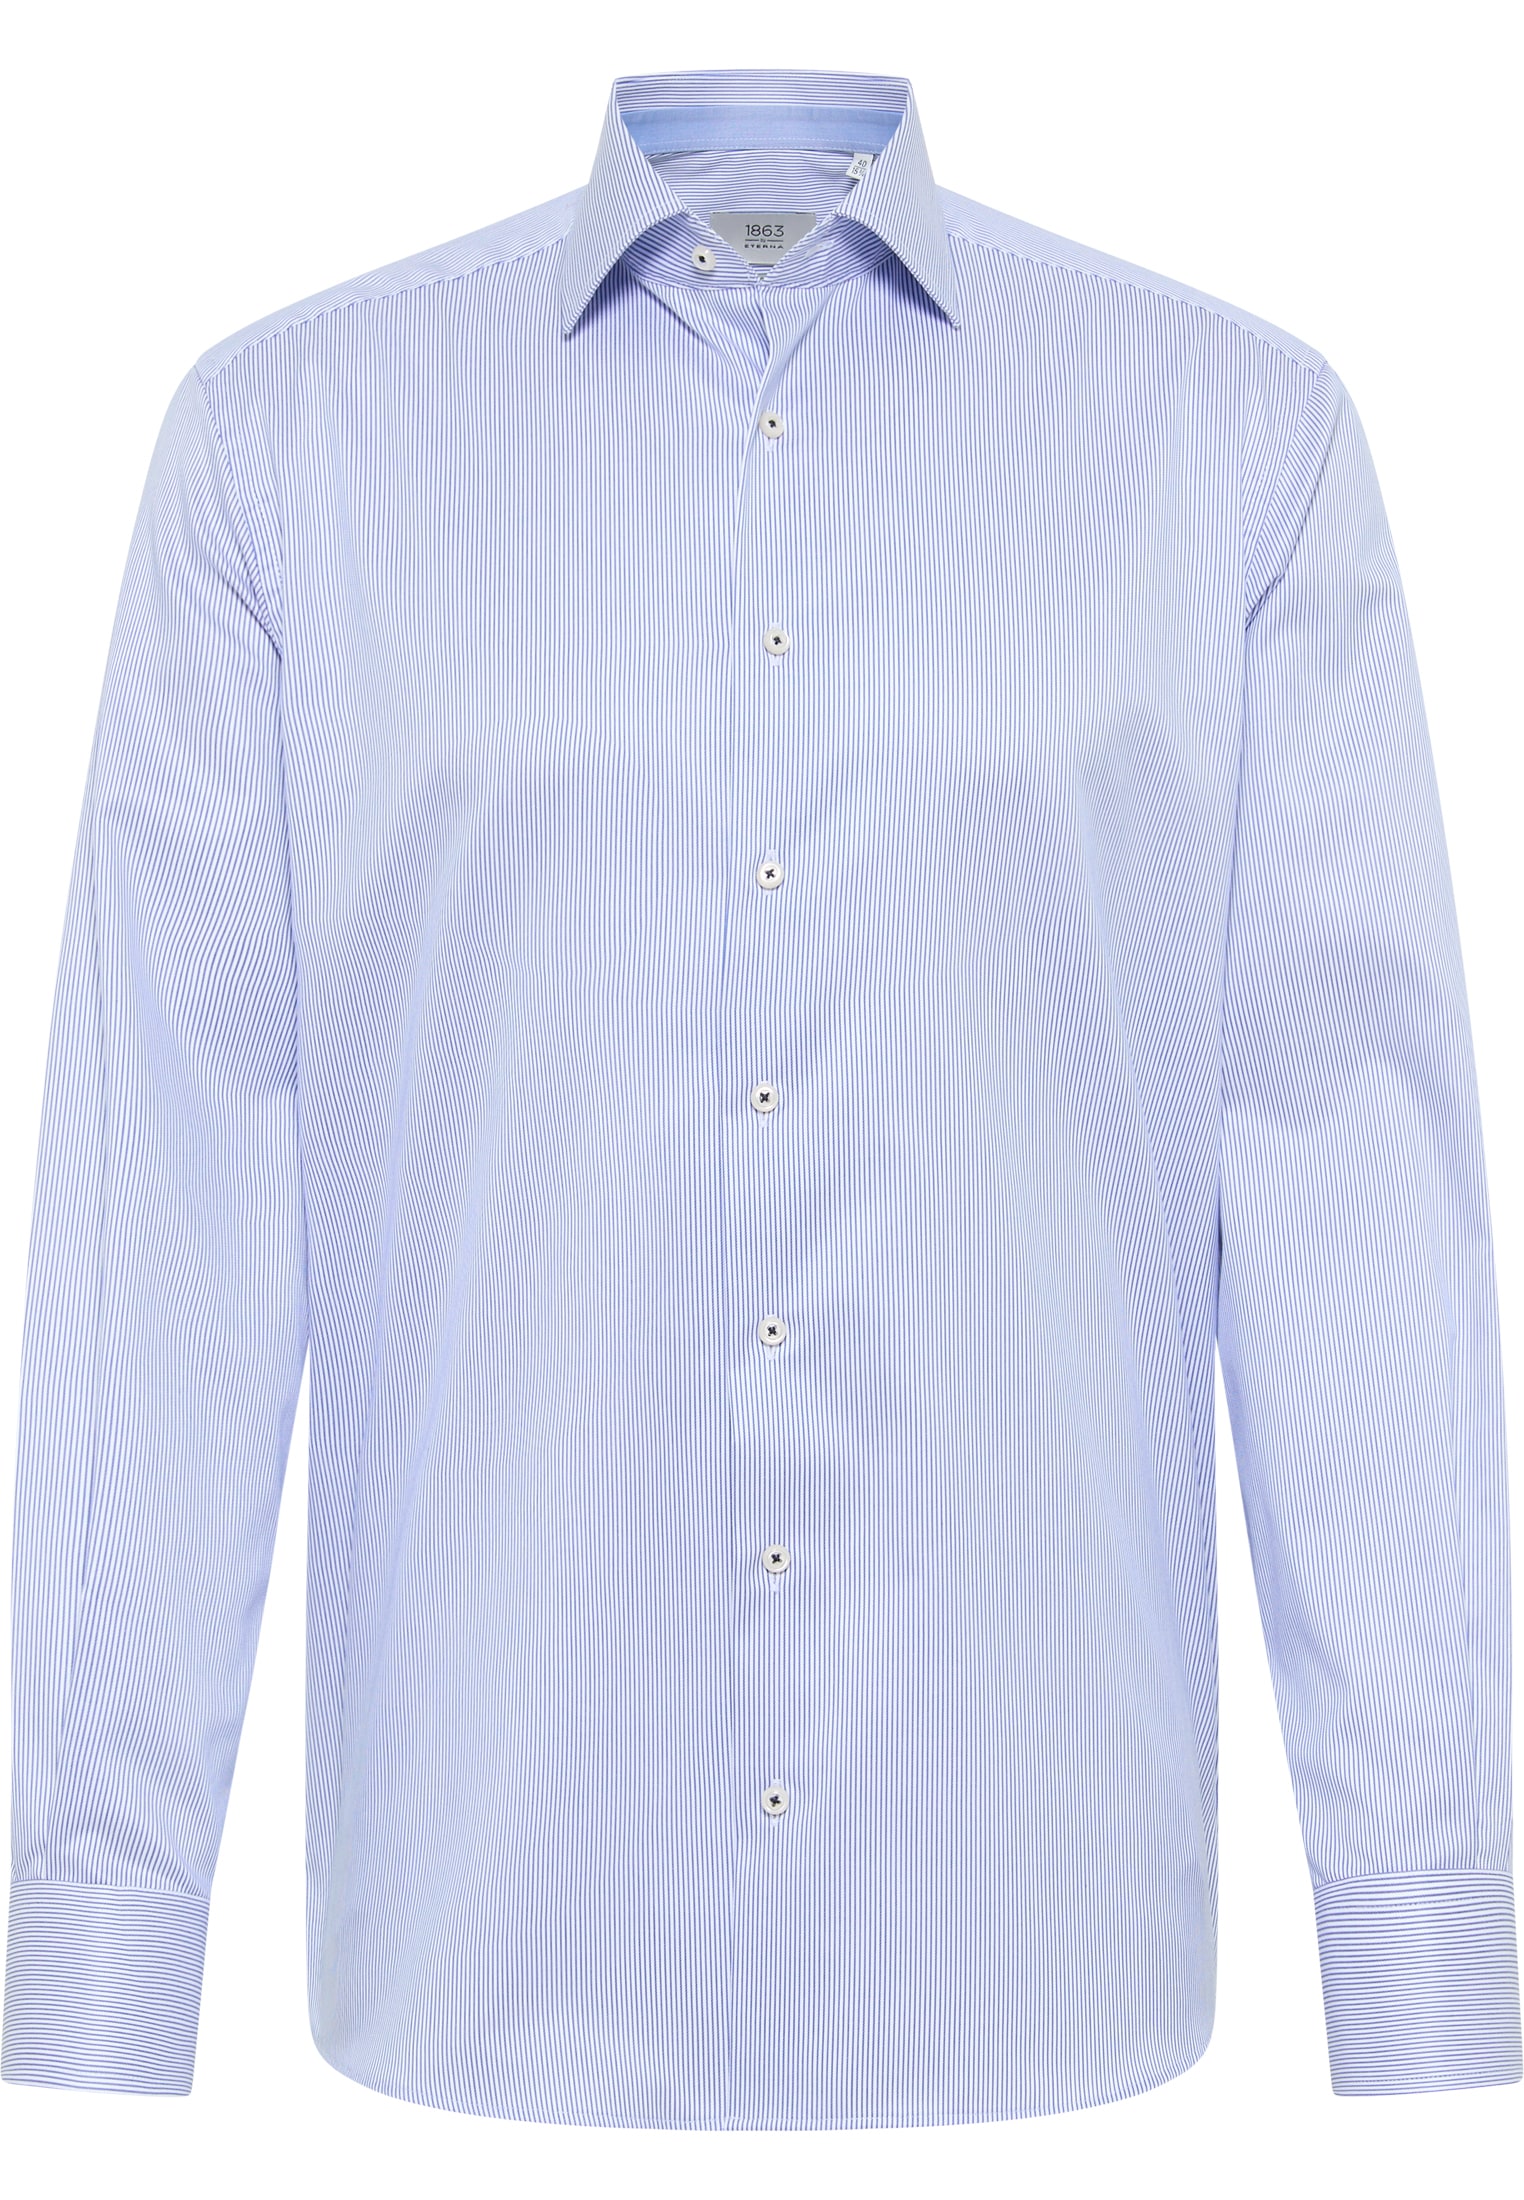 COMFORT FIT Overhemd in koningsblauw gestreept